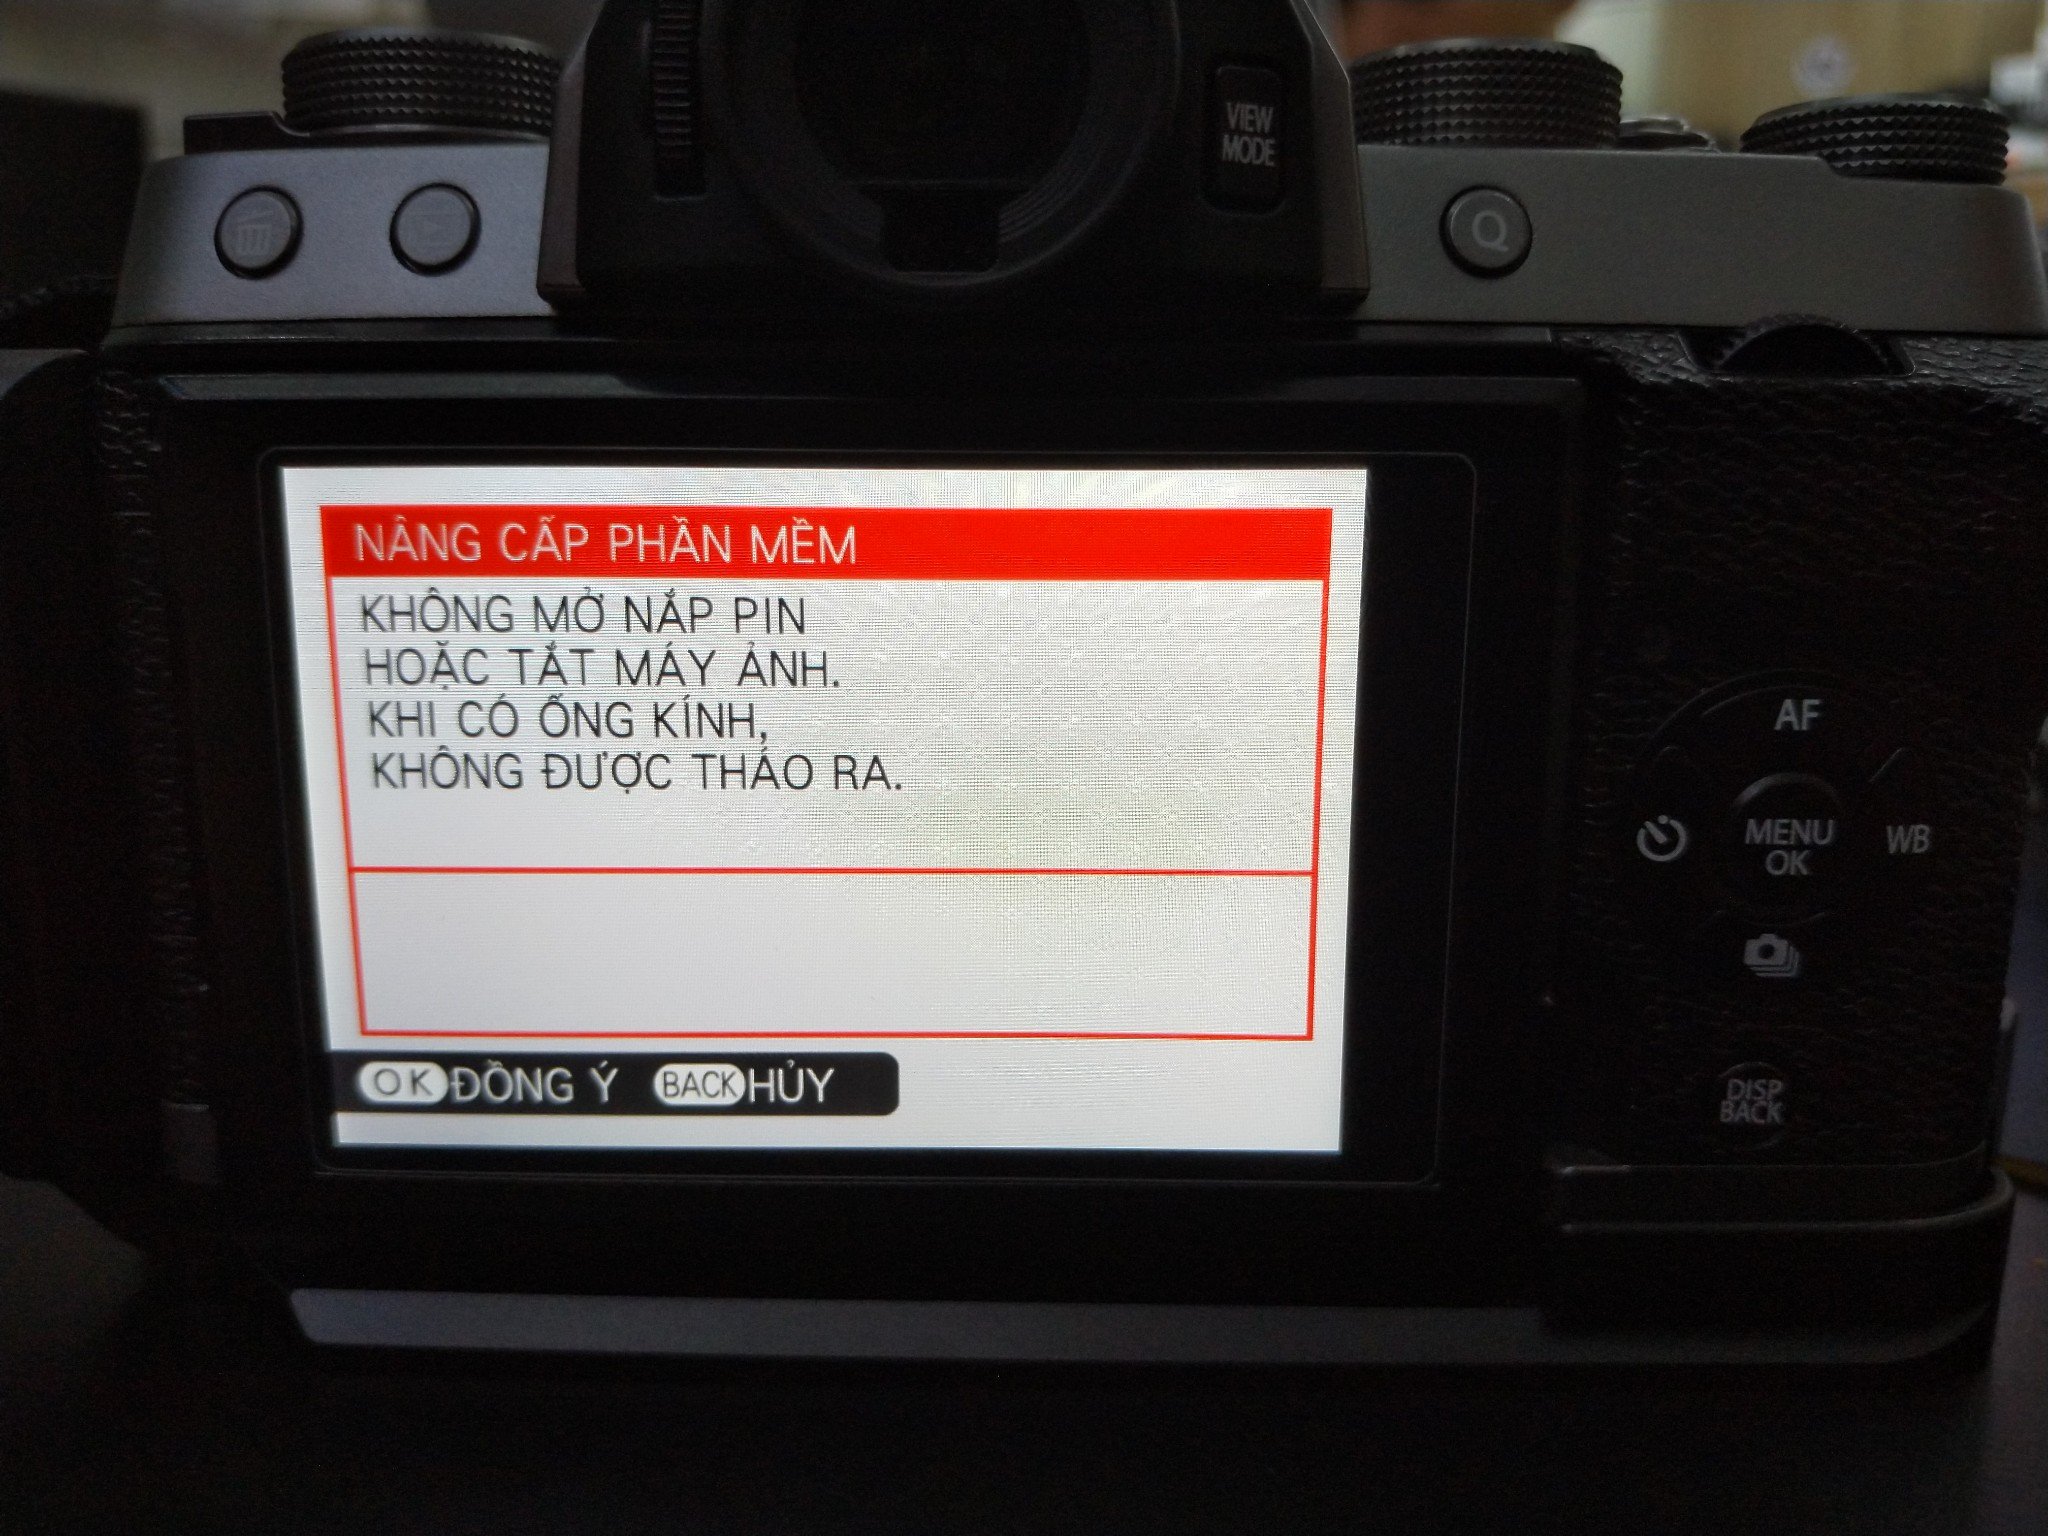 Tổng hợp Firmware mới nhất và cách cập nhật cho máy ảnh Fujifilm